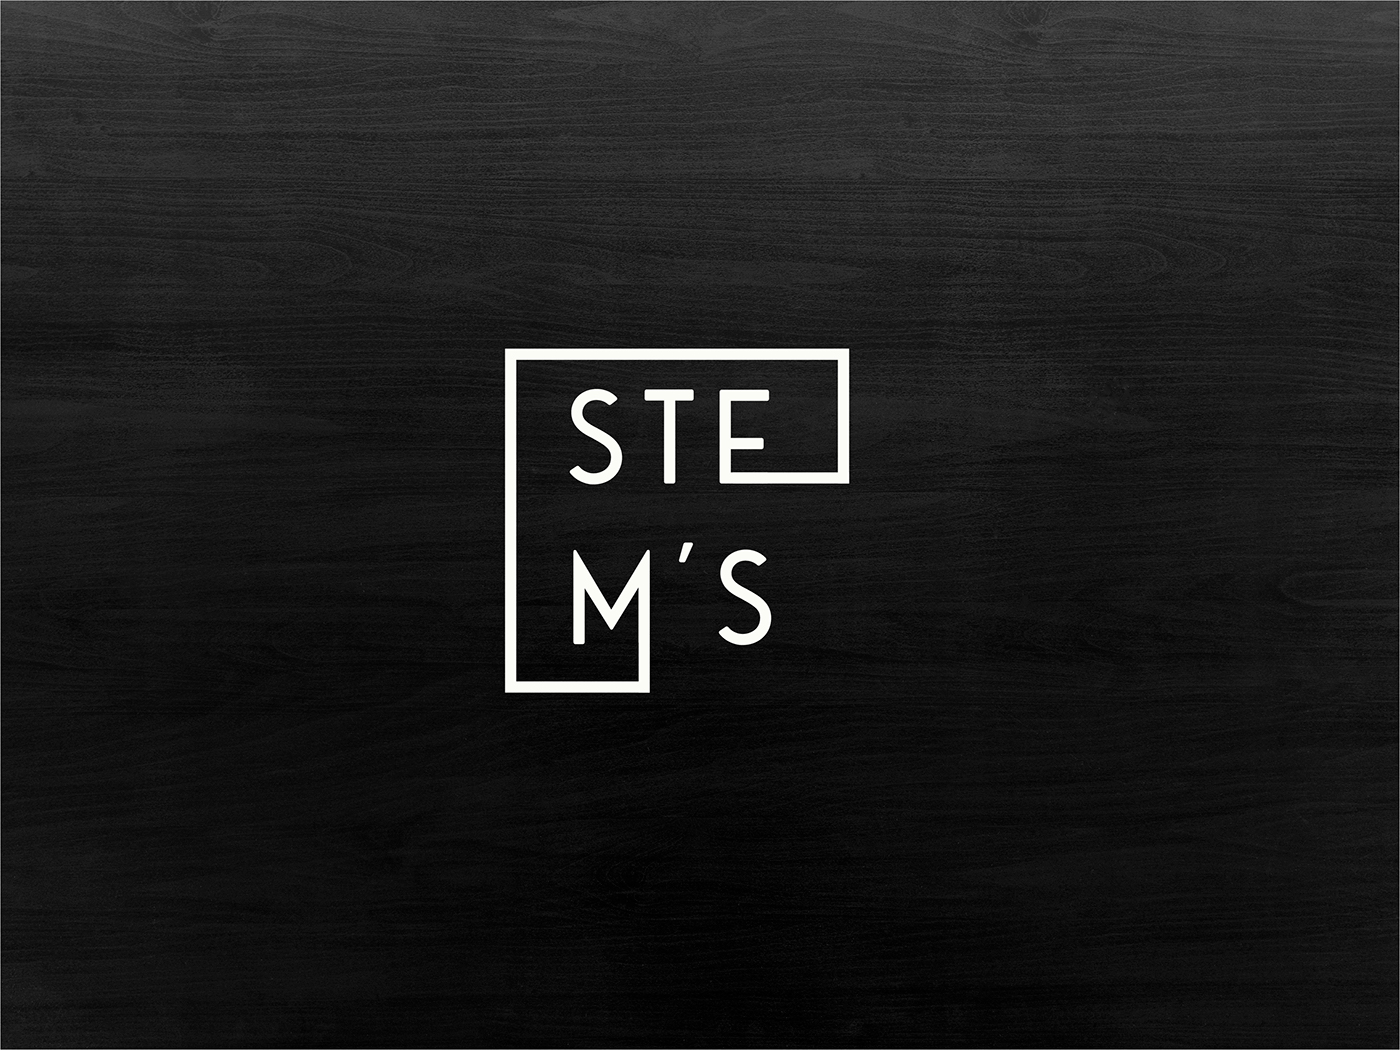 logo Stem’s design branding  logo 2018